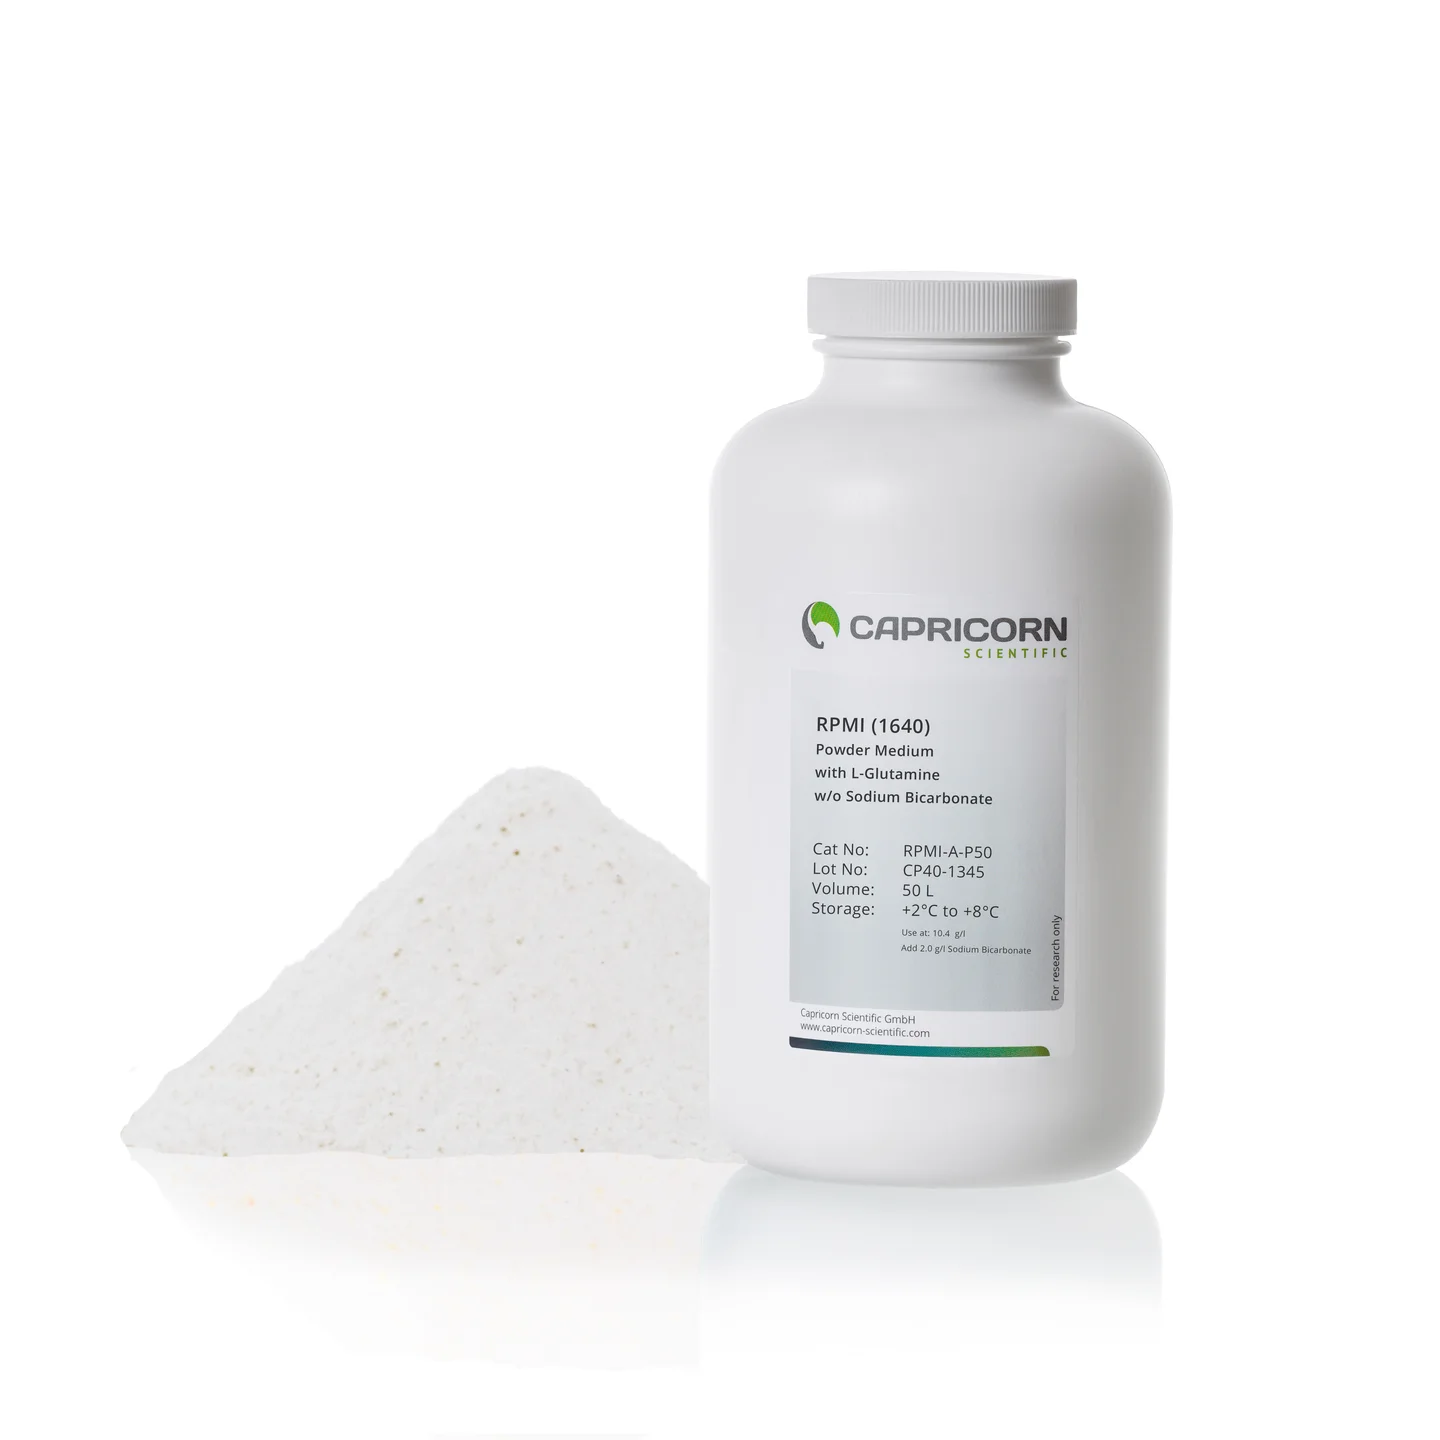 RPMI 1640, Powder Medium, 50 L, with L-Glutamine, without Sodium Bicarbonate